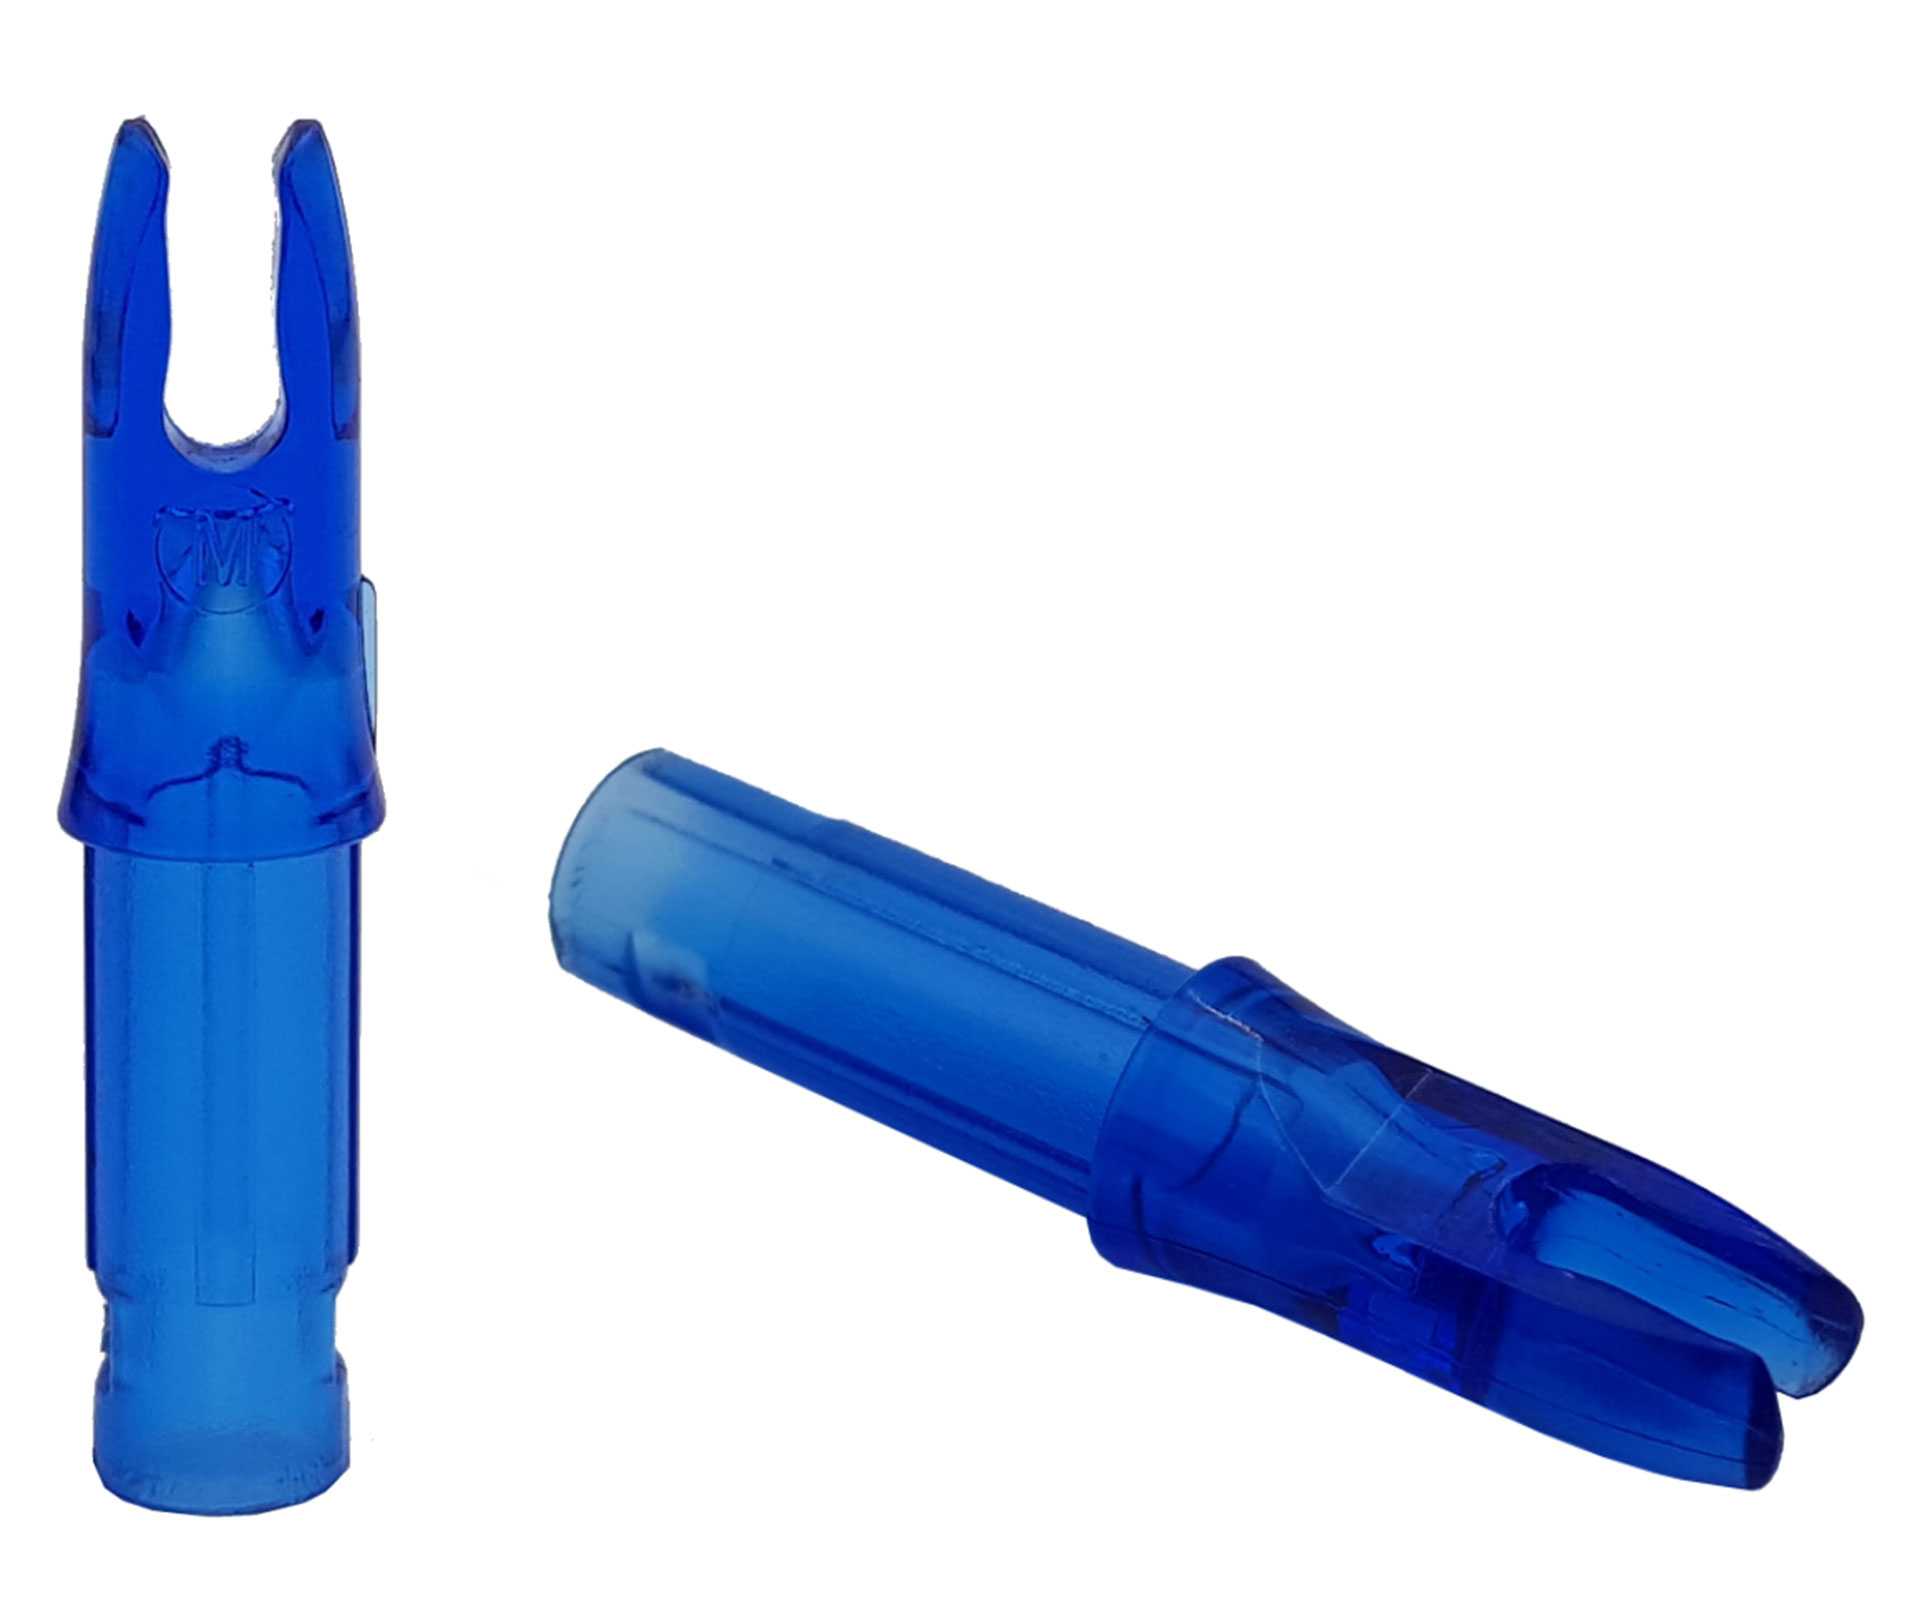 Хвостовик Centershot 6.2mm для лучных стрел синий